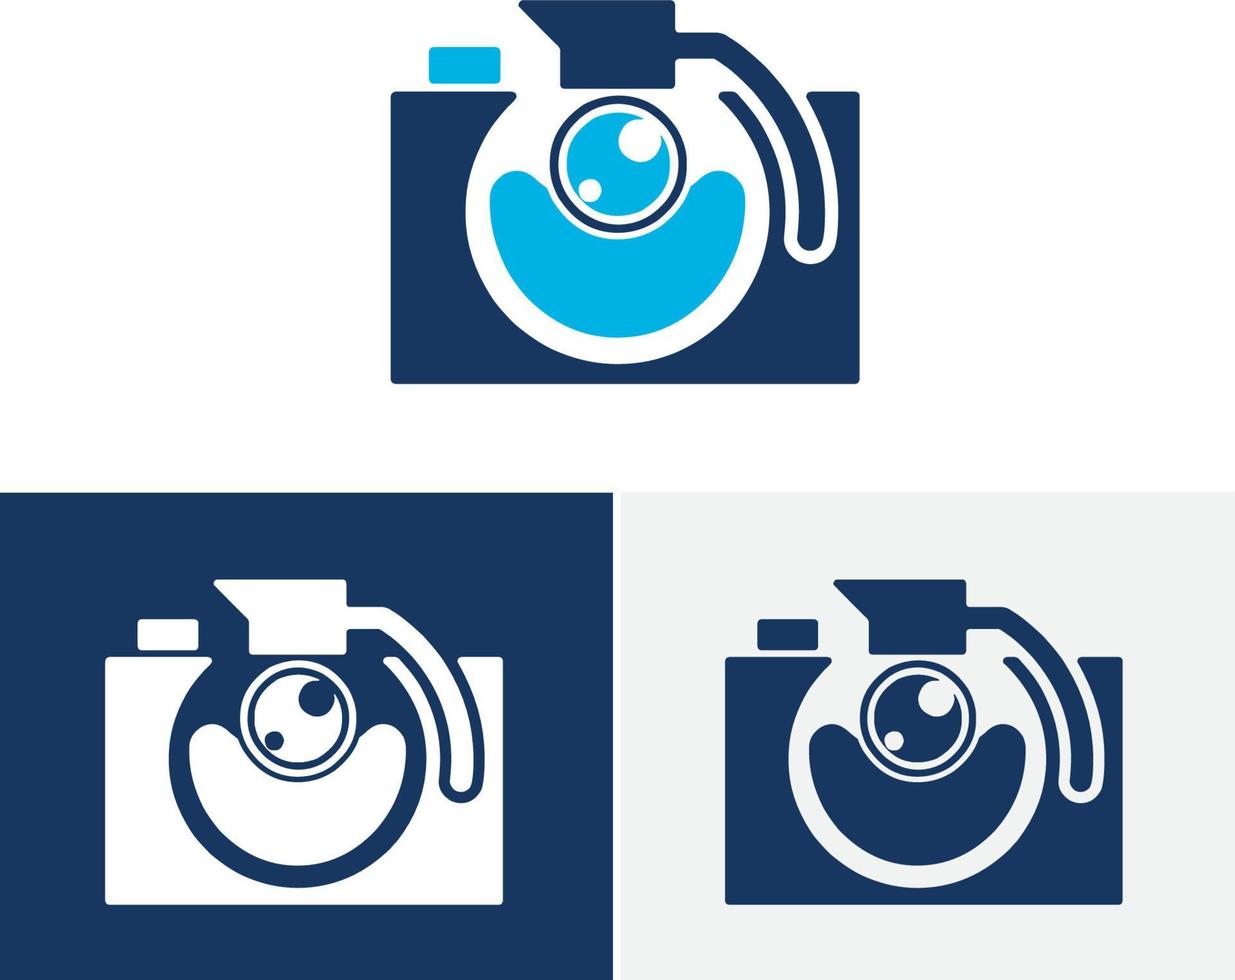 logo d'appareil photo numérique, logo de photographie pour studio photo vecteur